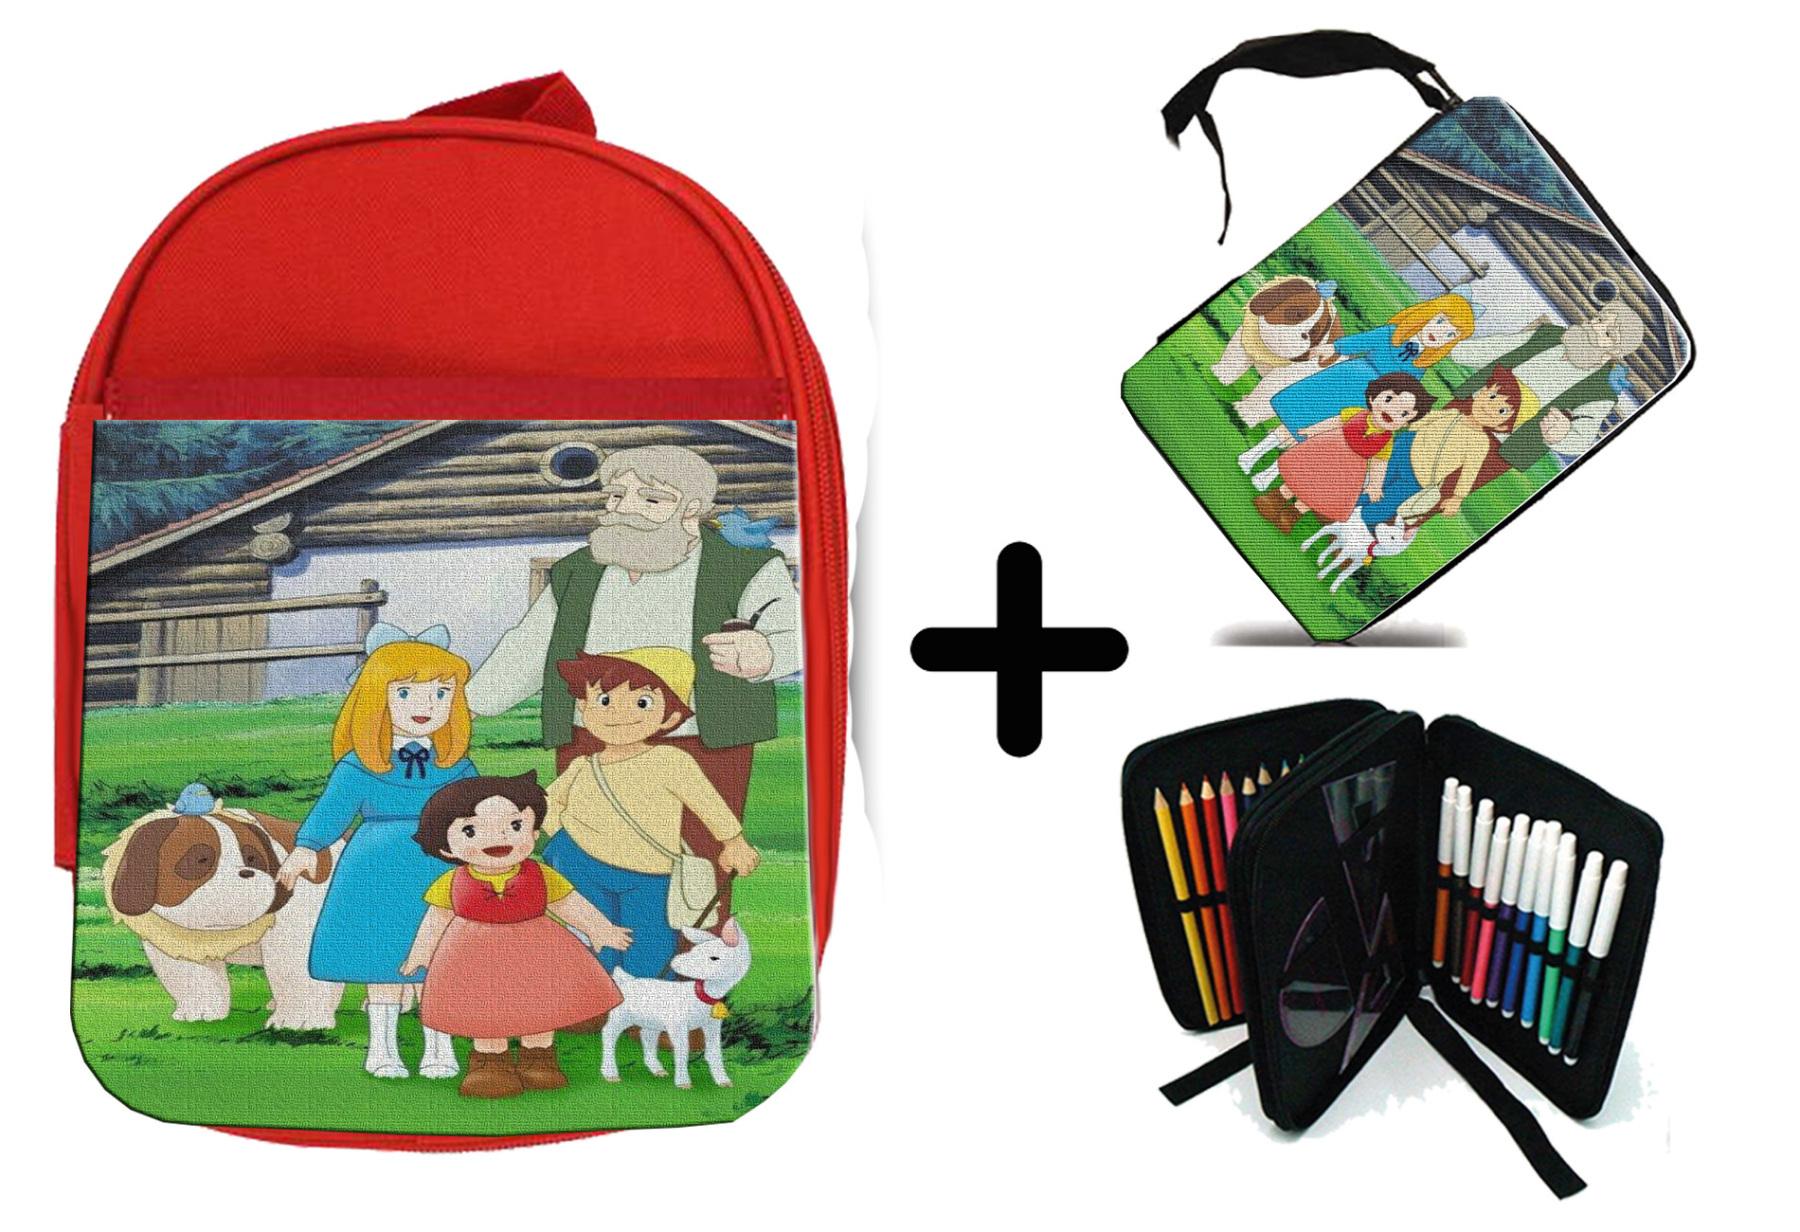 Изображение товара: MERCHANDMANIA пакет красный рюкзак и HEIDI старая серия аниме Школьный Материал Дети пользовательское предложение